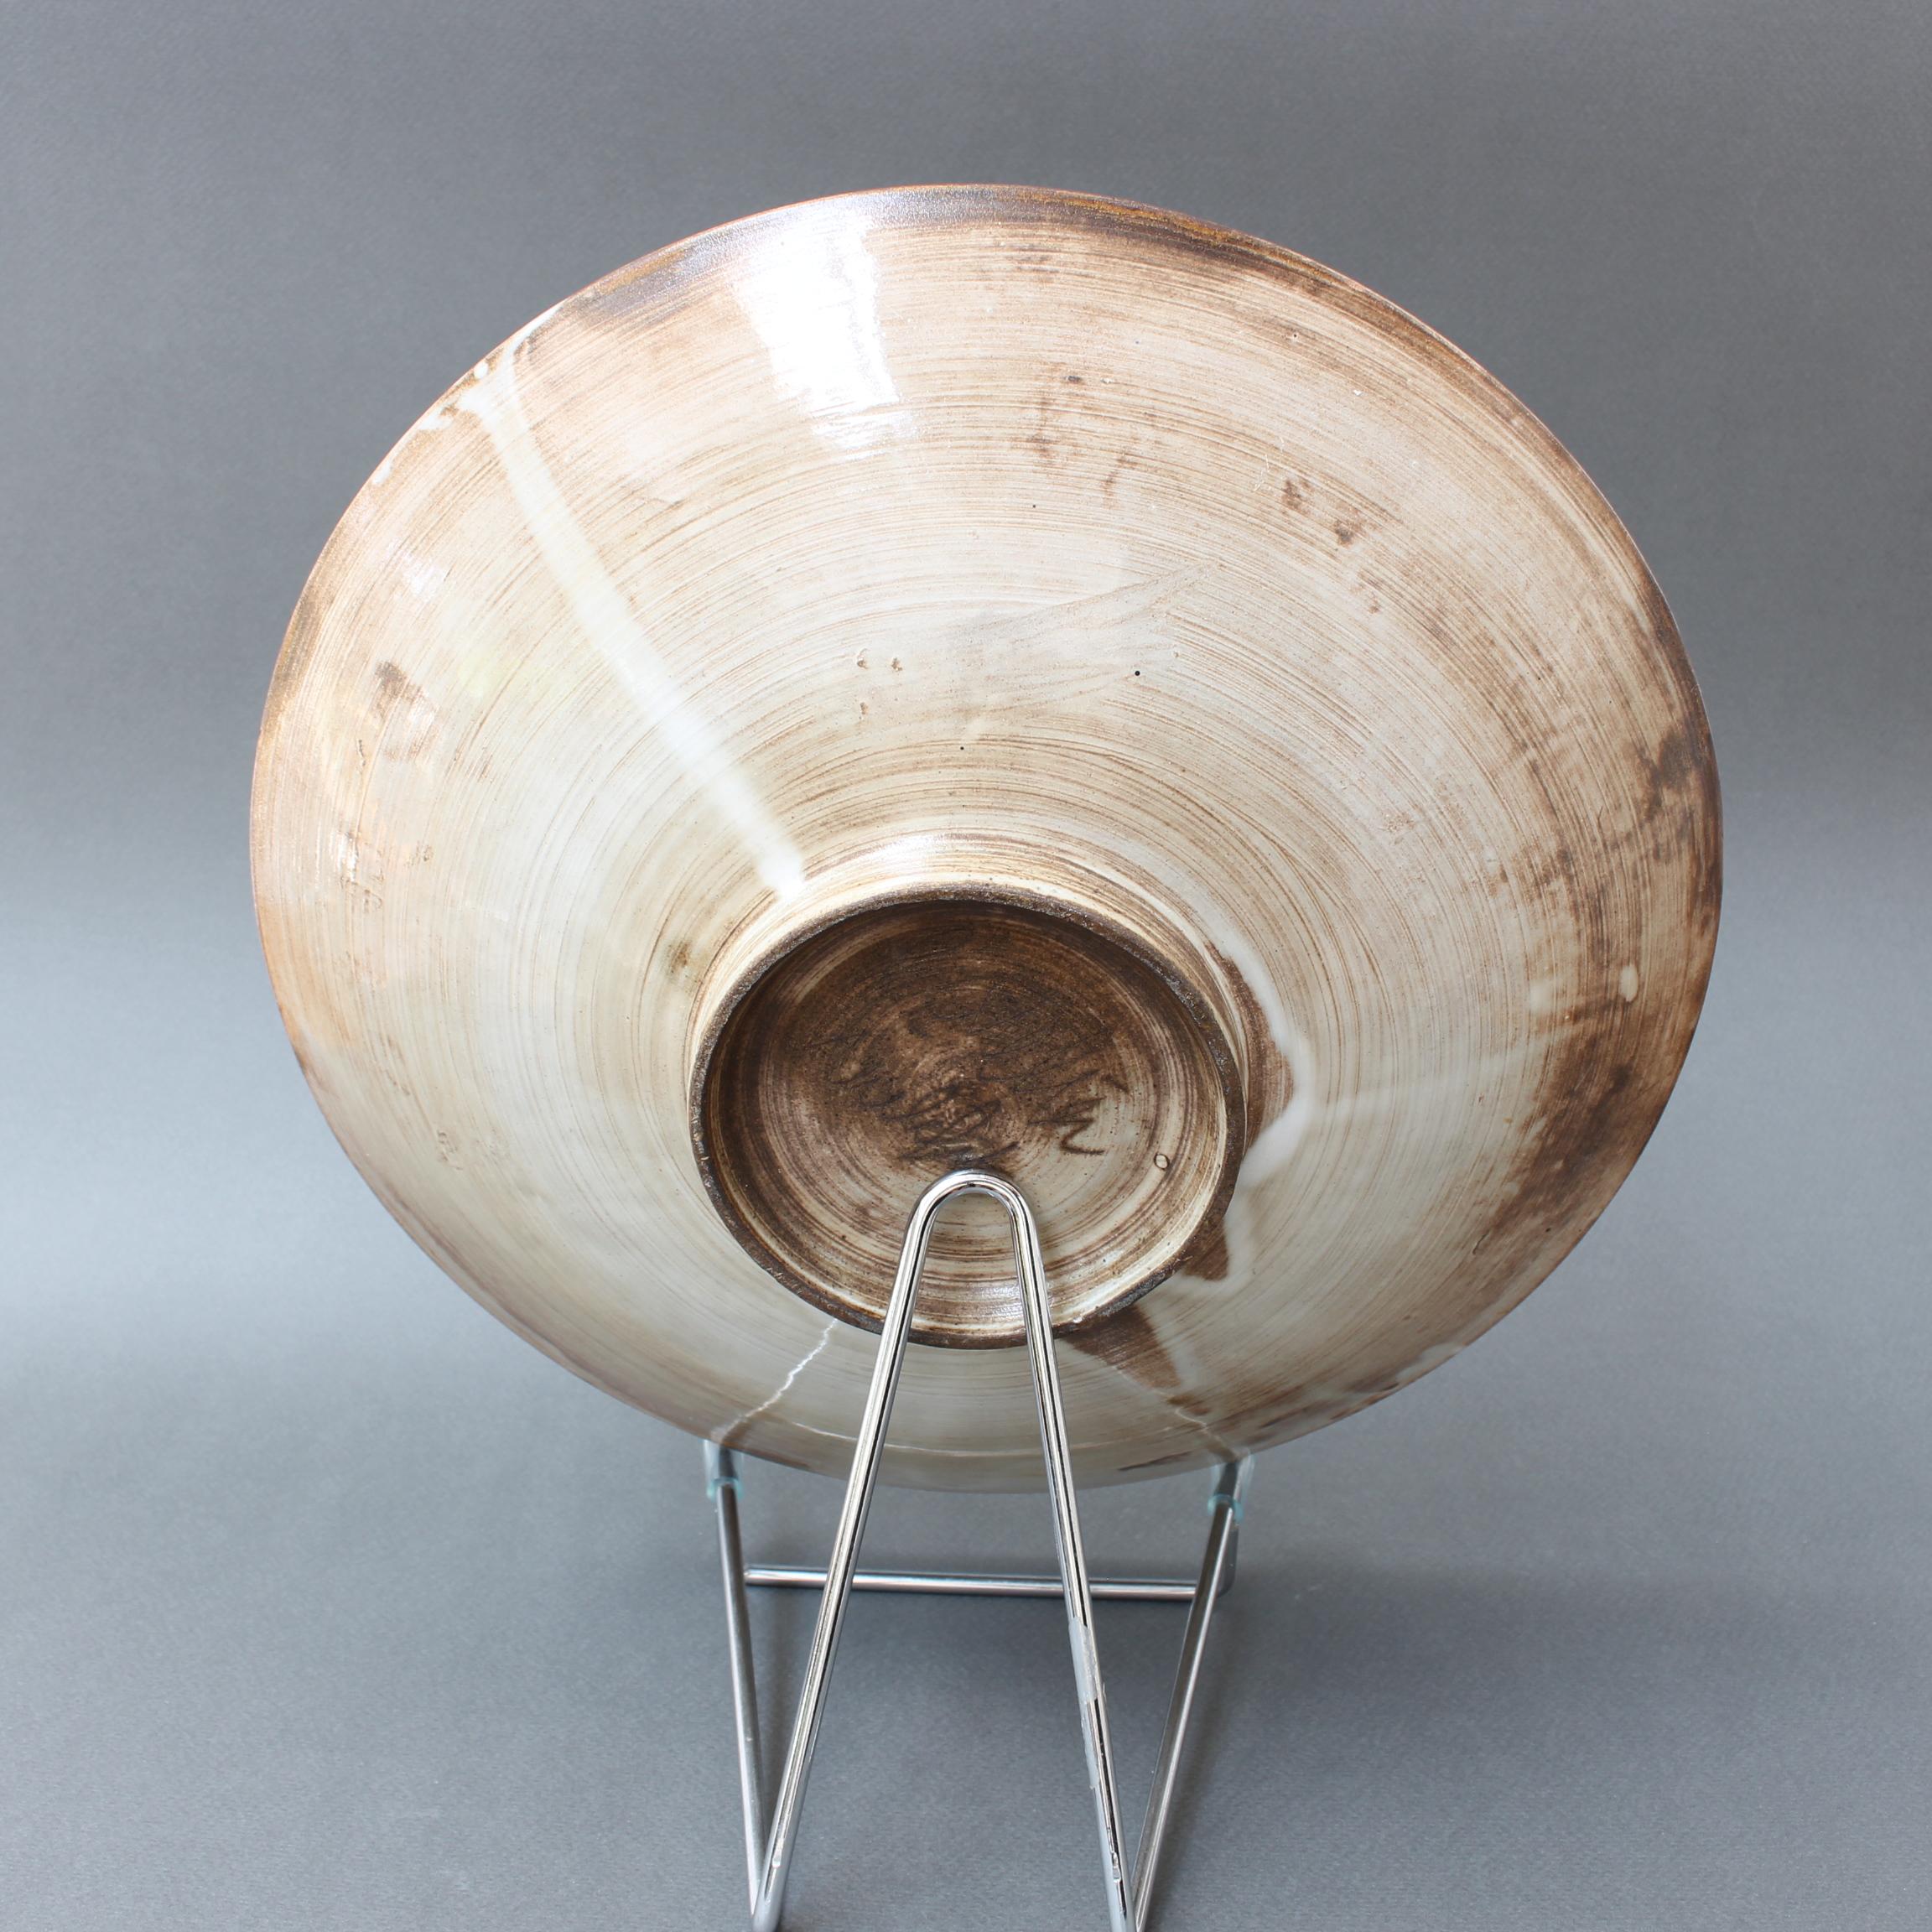 Ceramic Vintage French Decorative Bowl by Jacques Pouchain for Atelier Dieulefit